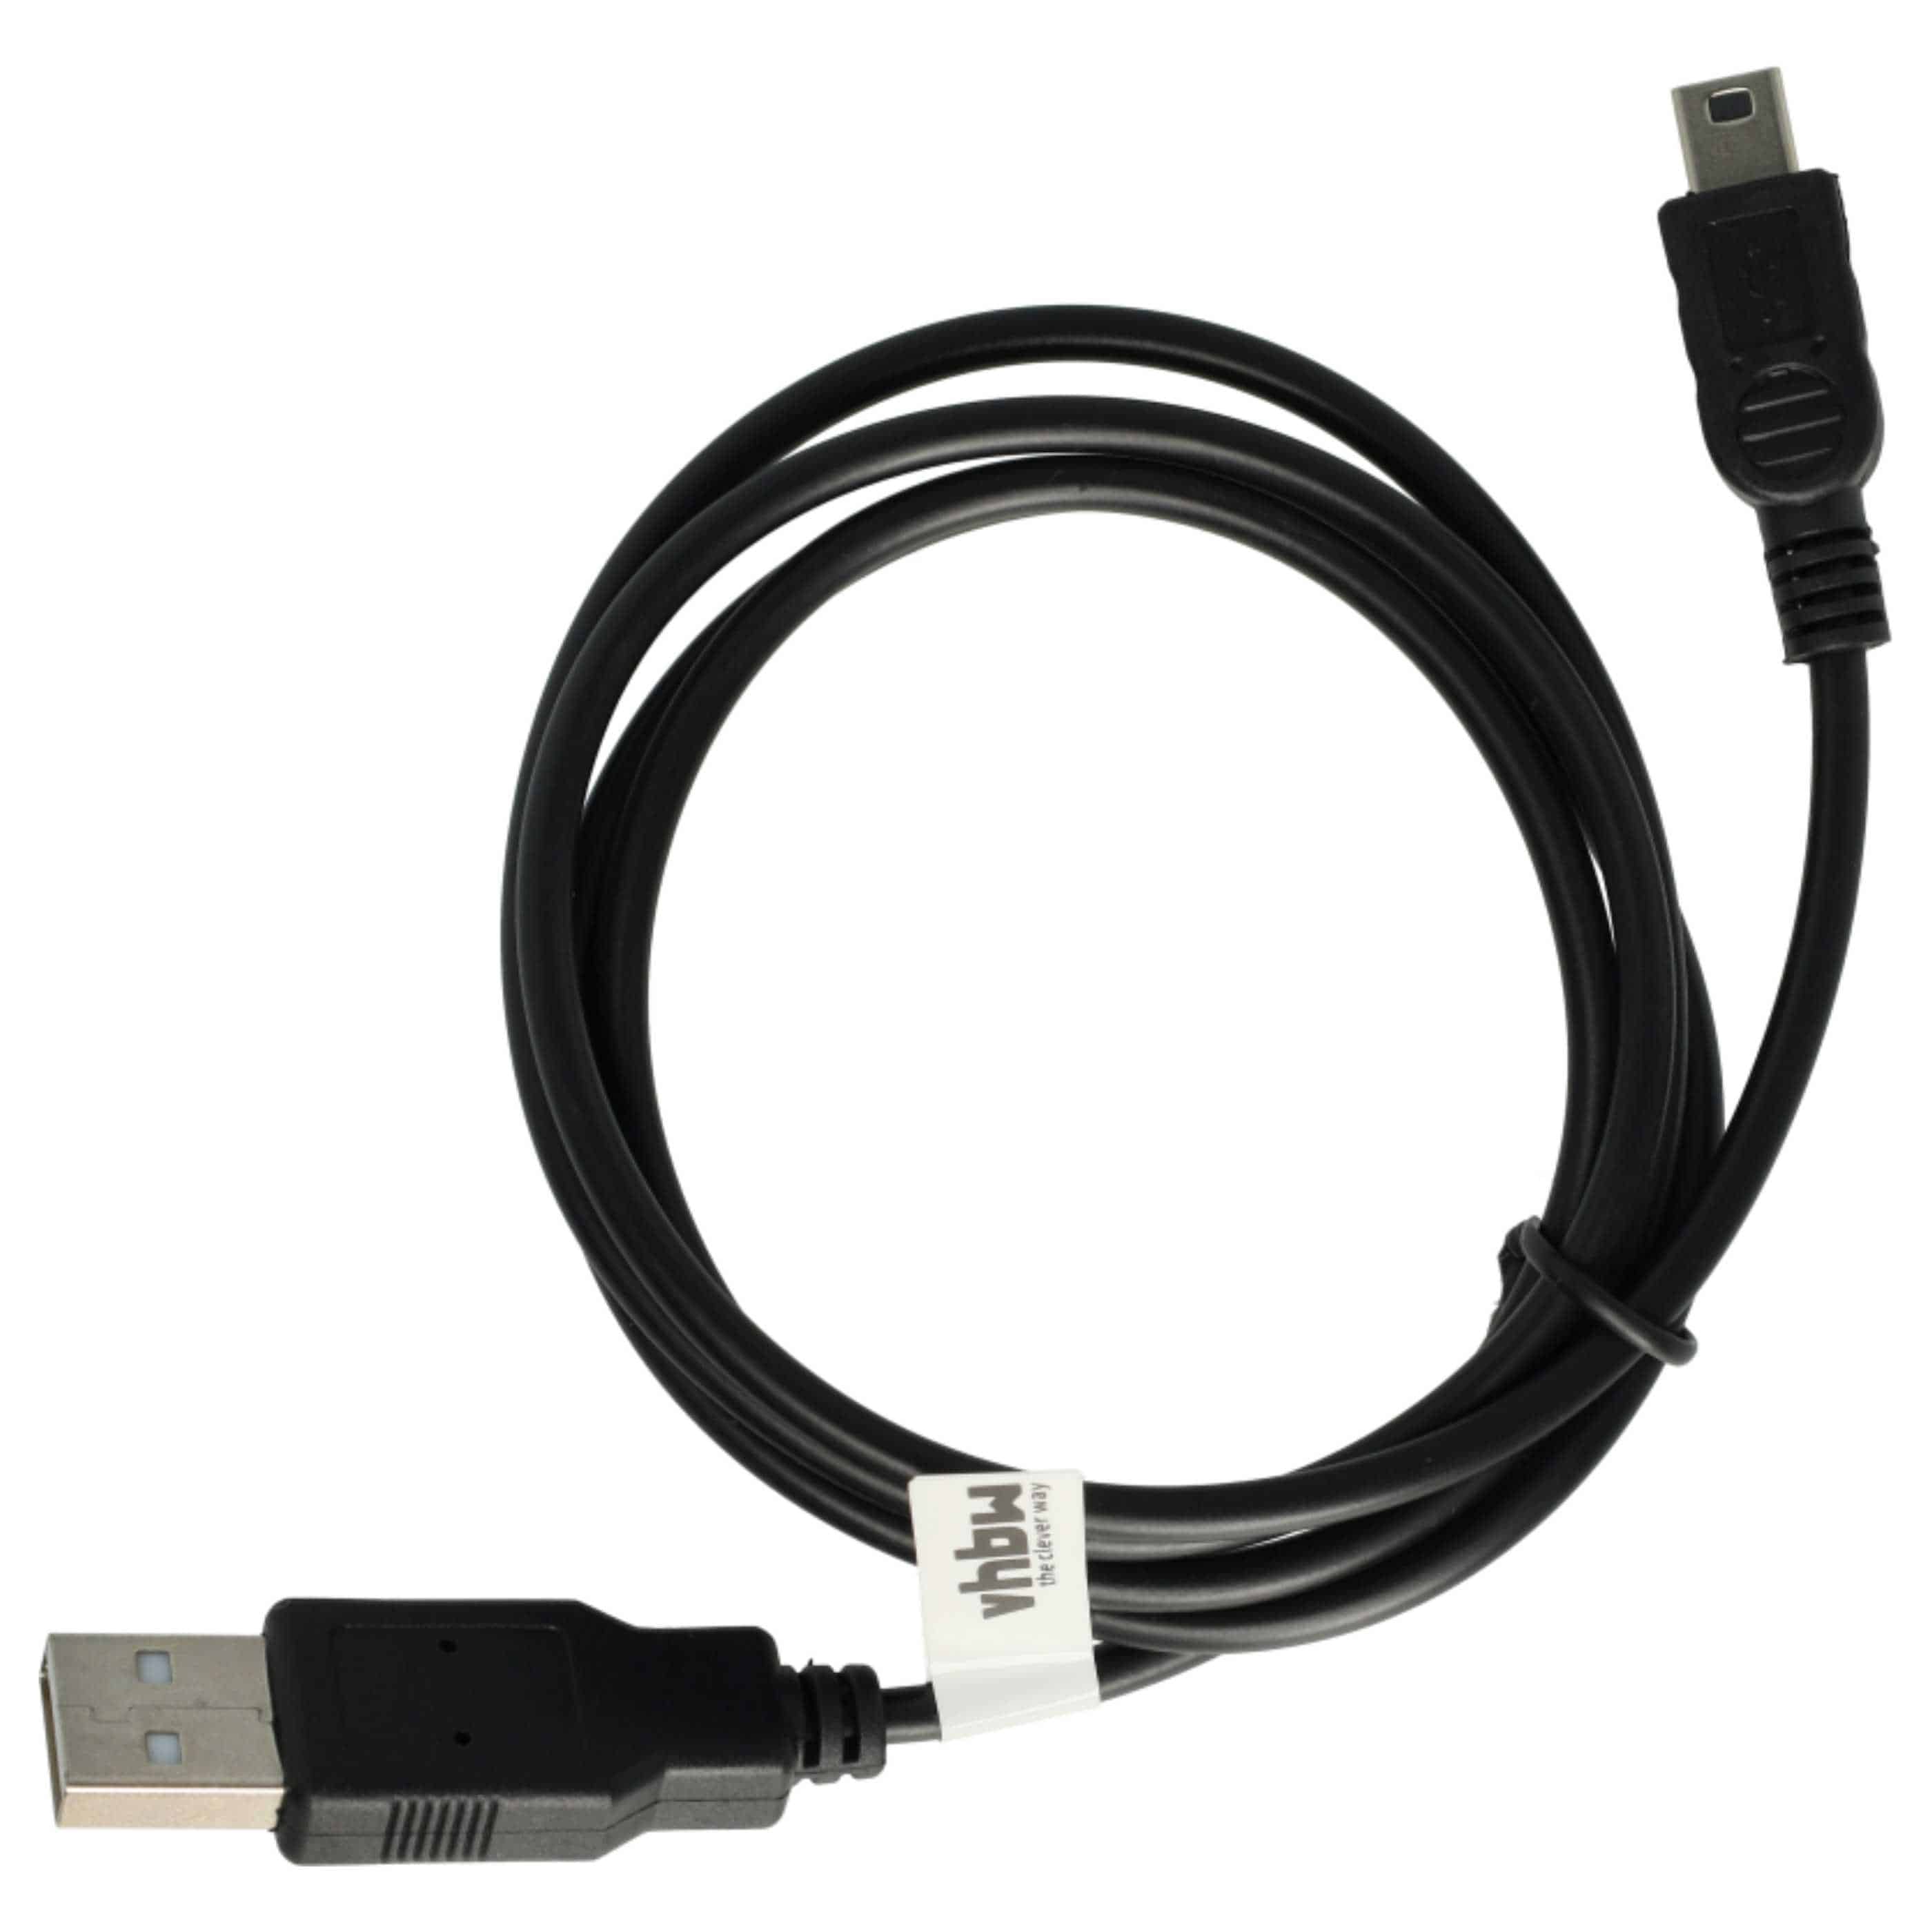 Cavo dati USB cavo di ricarica 2-in-1 universale compatibile con tutti i navigatori GPS - 100cm nero